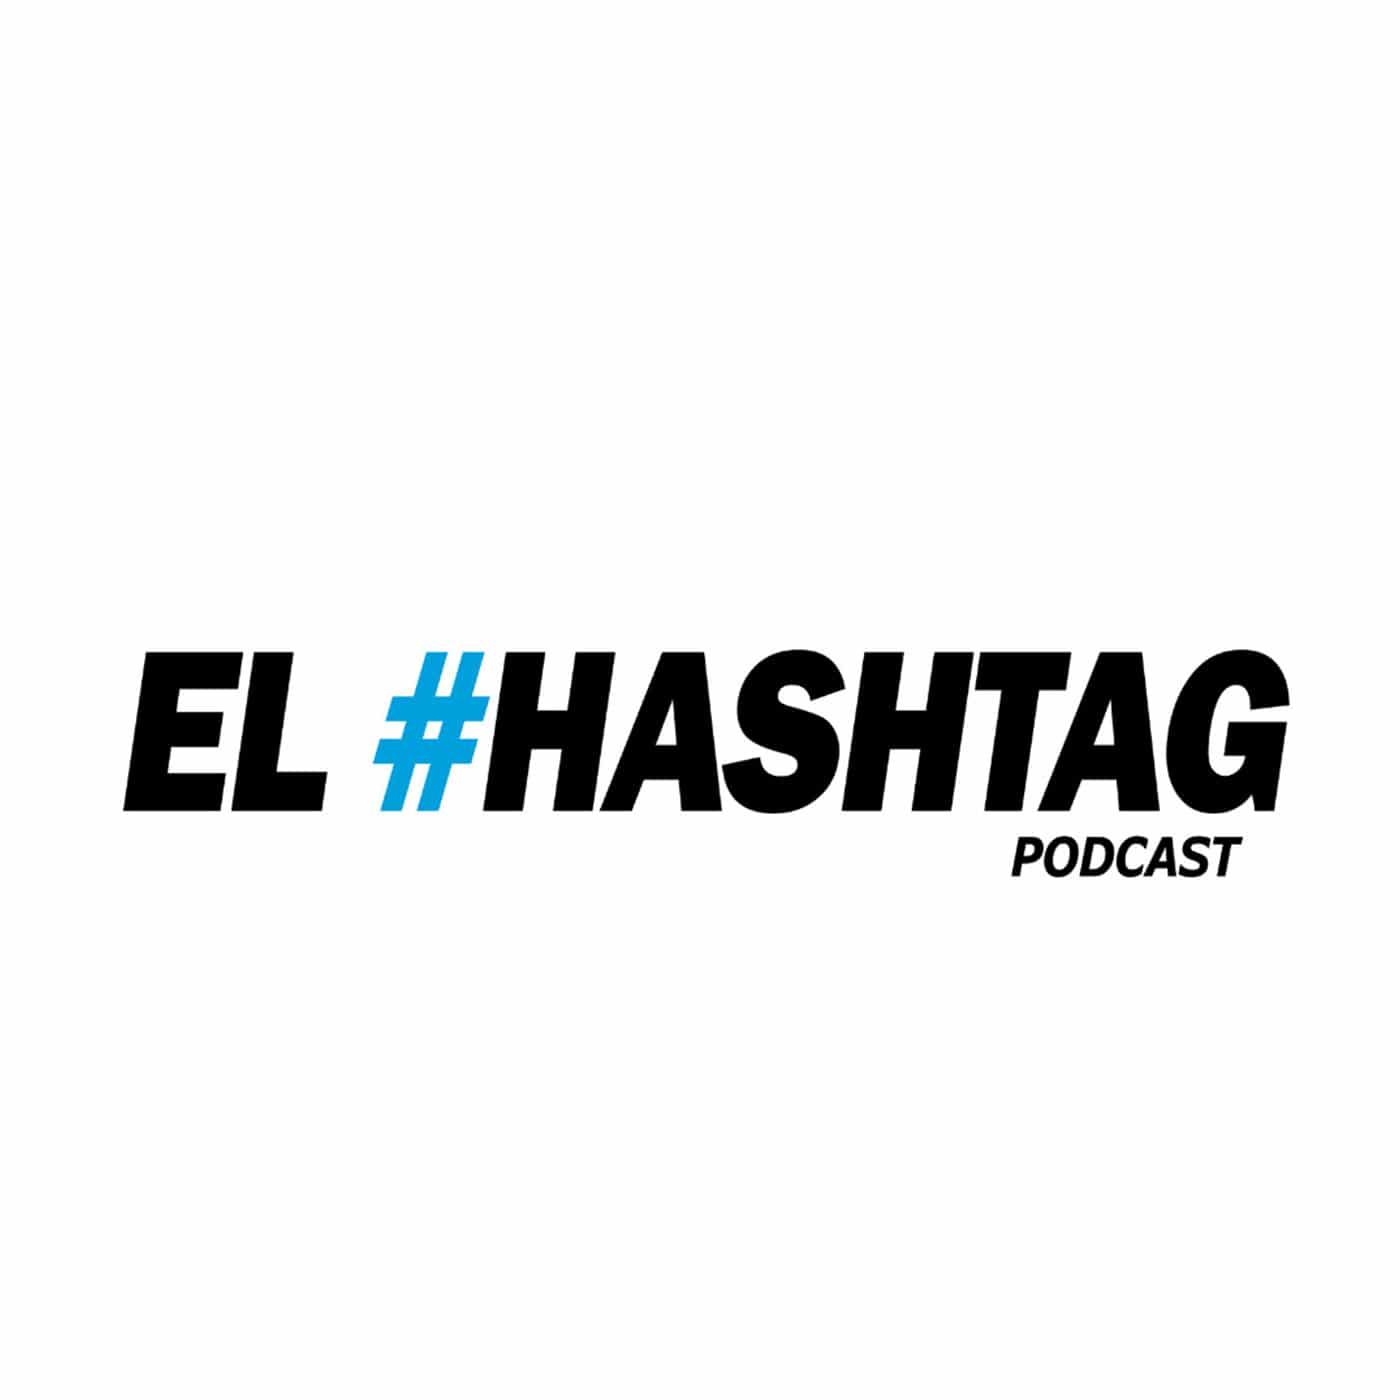 El Hashtag podcastrd